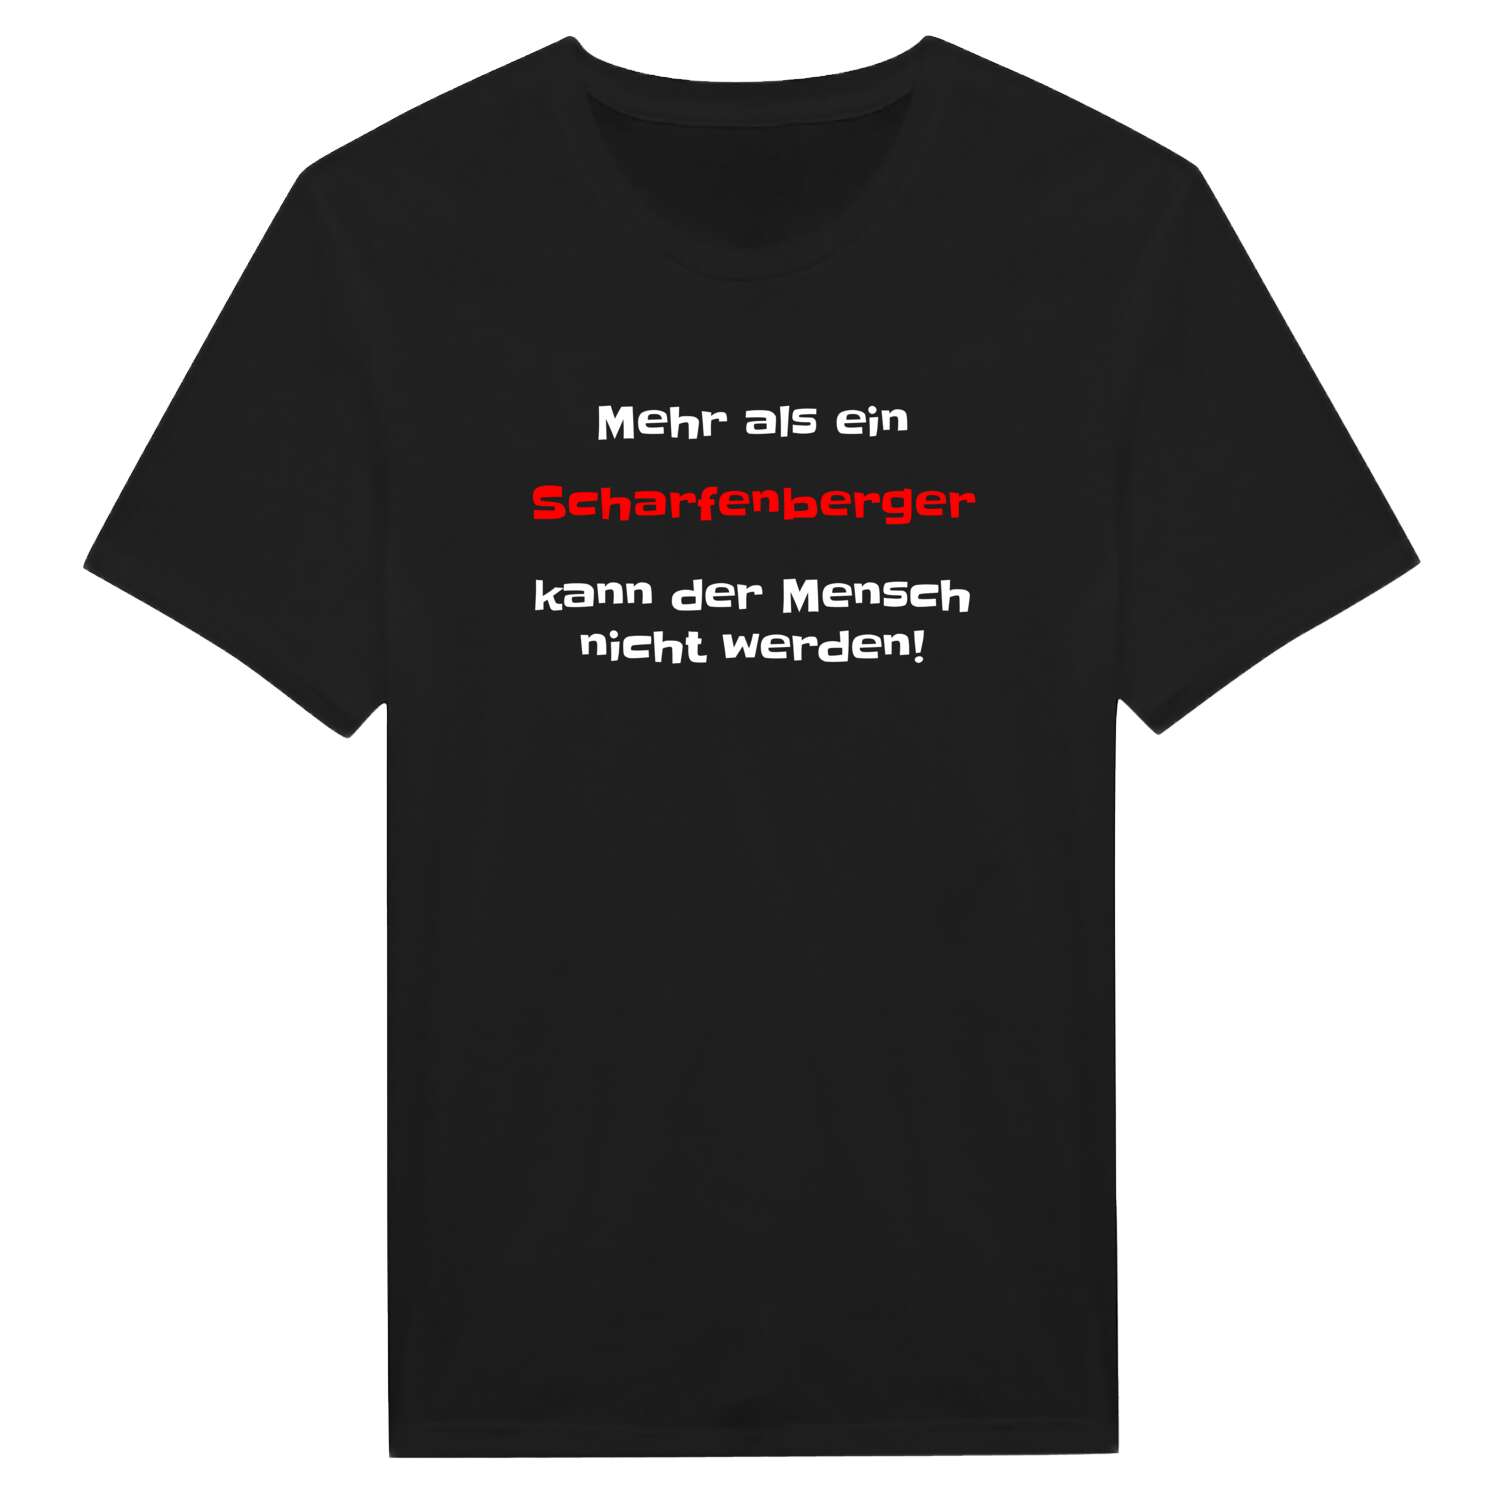 Scharfenberg T-Shirt »Mehr als ein«